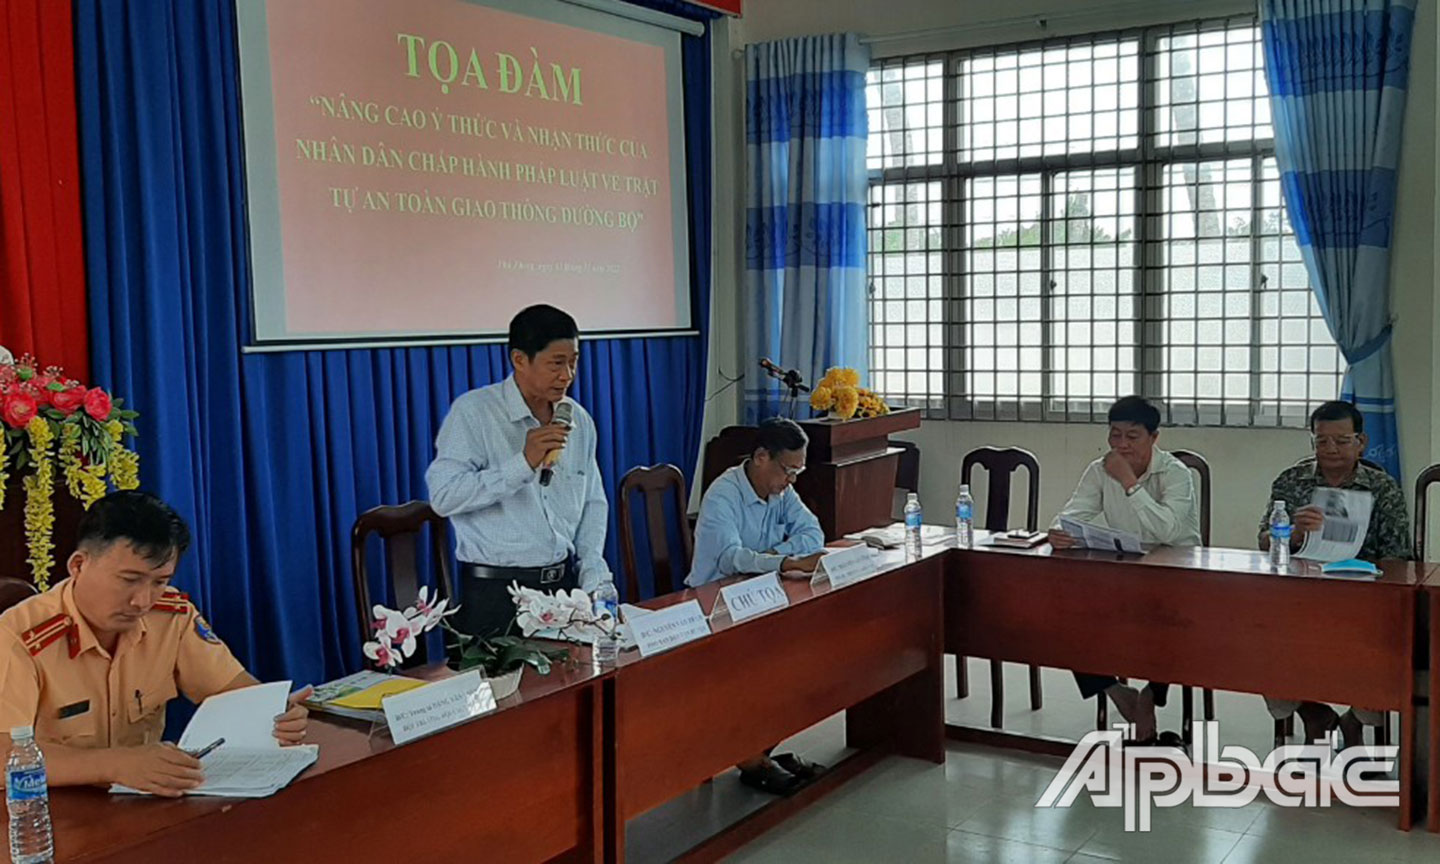 oạ đàm nâng cao ý thức và nhận thức chấp hành pháp luật về trật tự an toàn giao thông đường bộ tại xã Phú Phong, huyện Châu Thành.